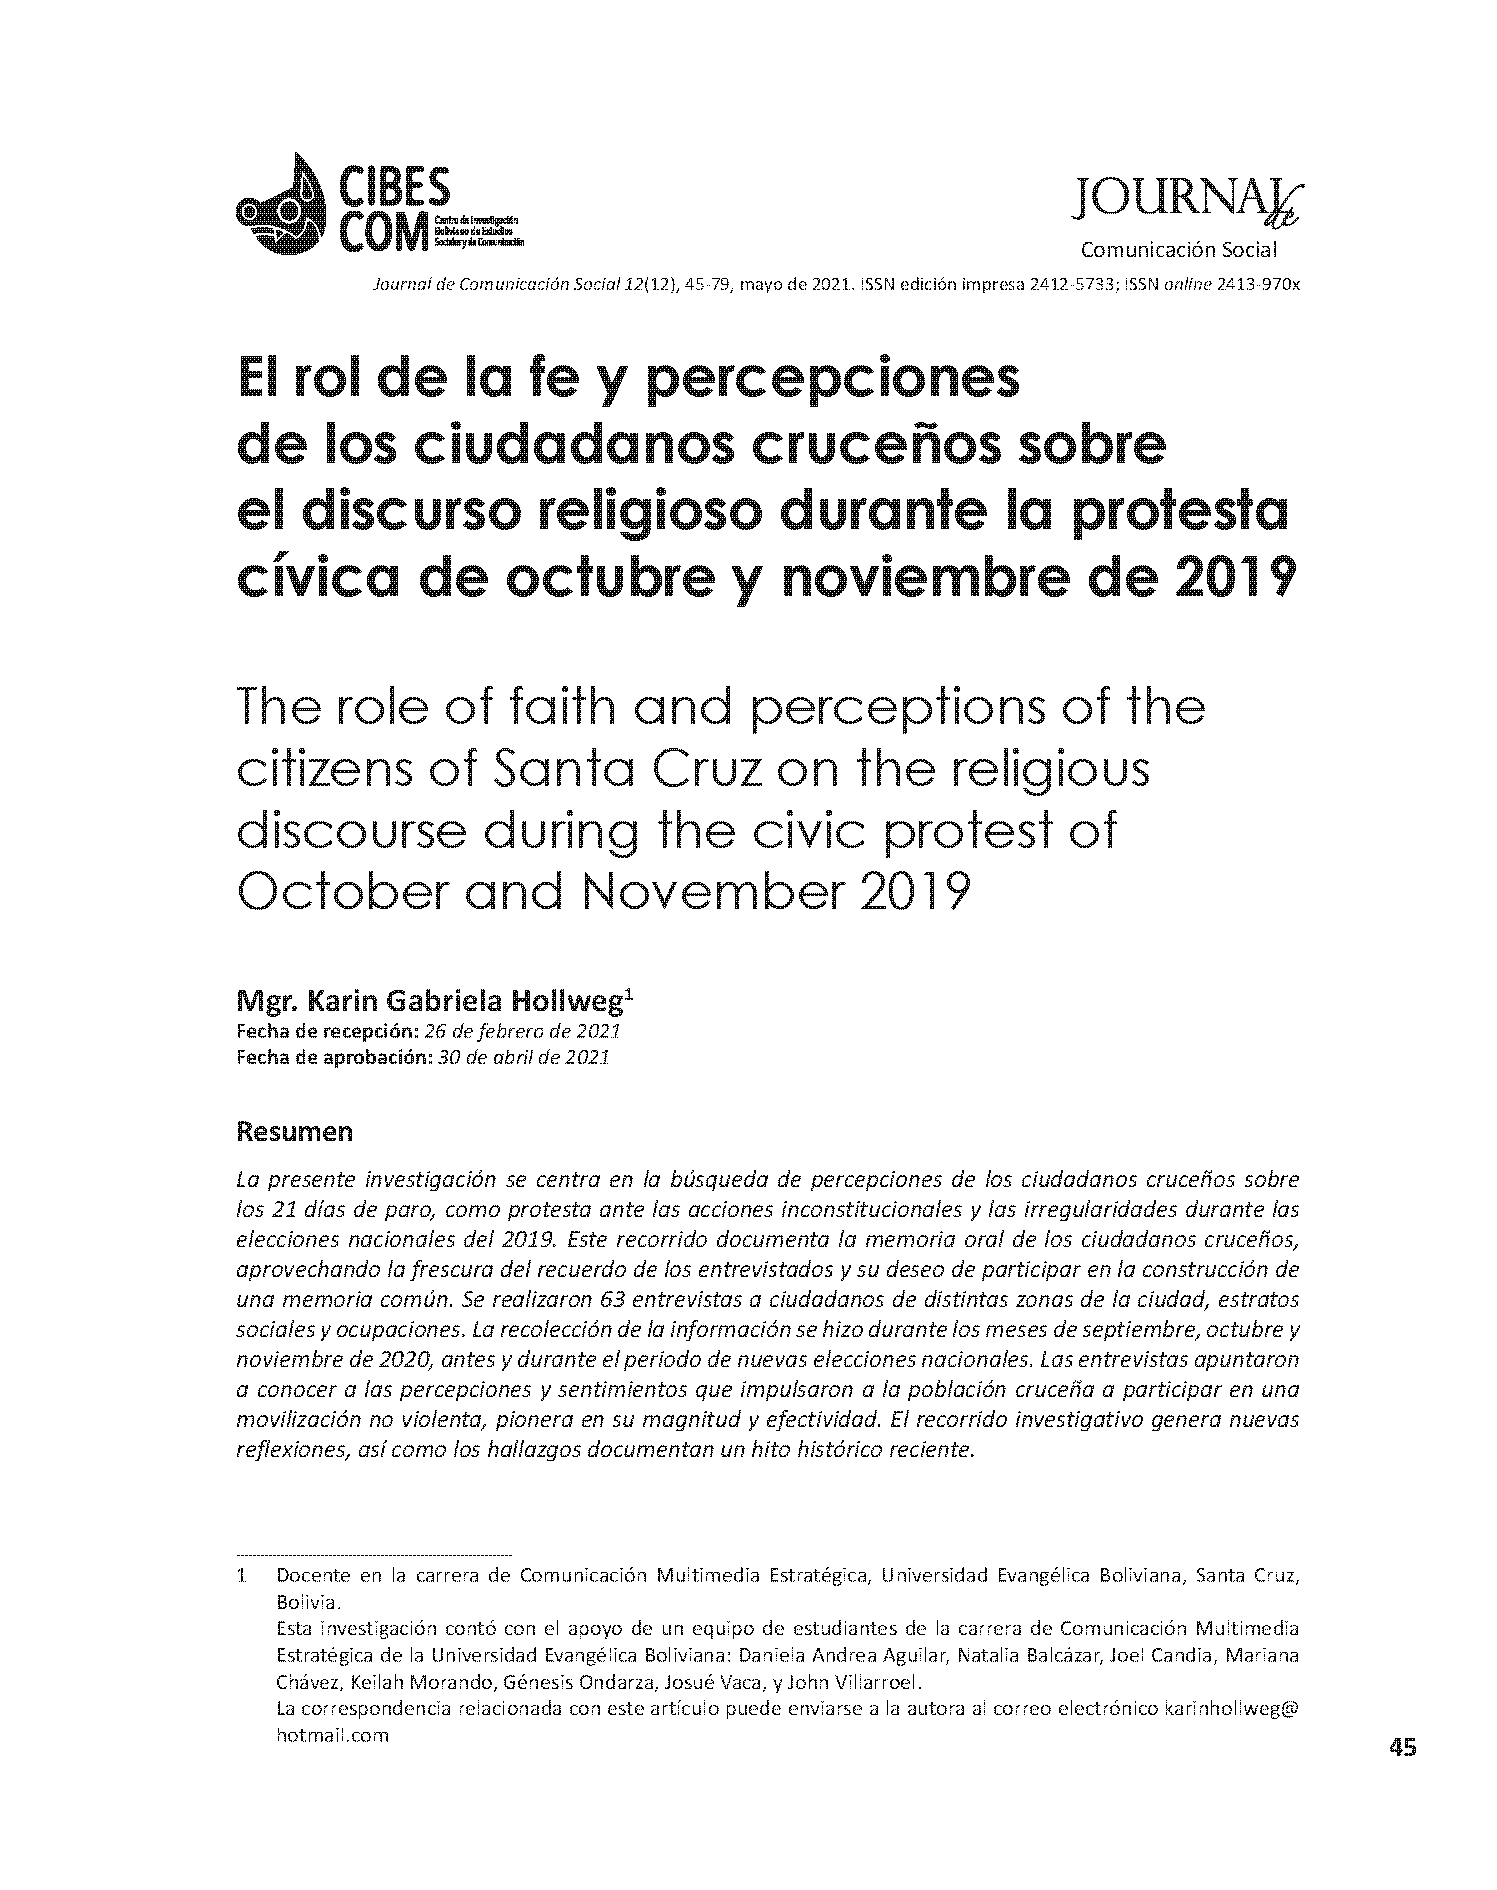 El rol de la fe y percepciones de los ciudadanos cruceños sobre el discurso religioso durante la protesta cívica de octubre y noviembre de 2019